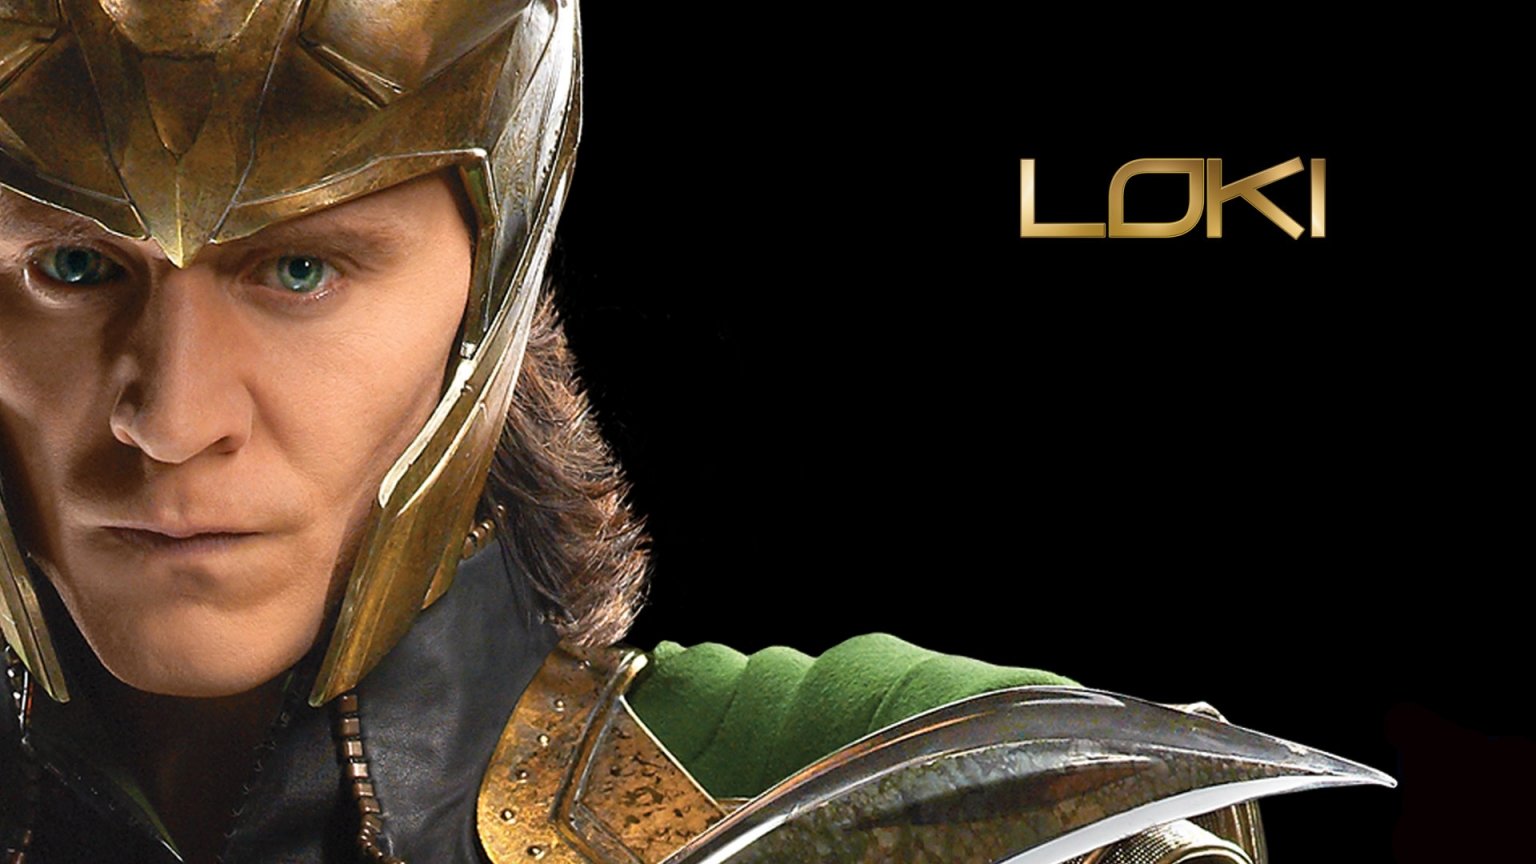 The Avengers Loki for 1536 x 864 HDTV resolution